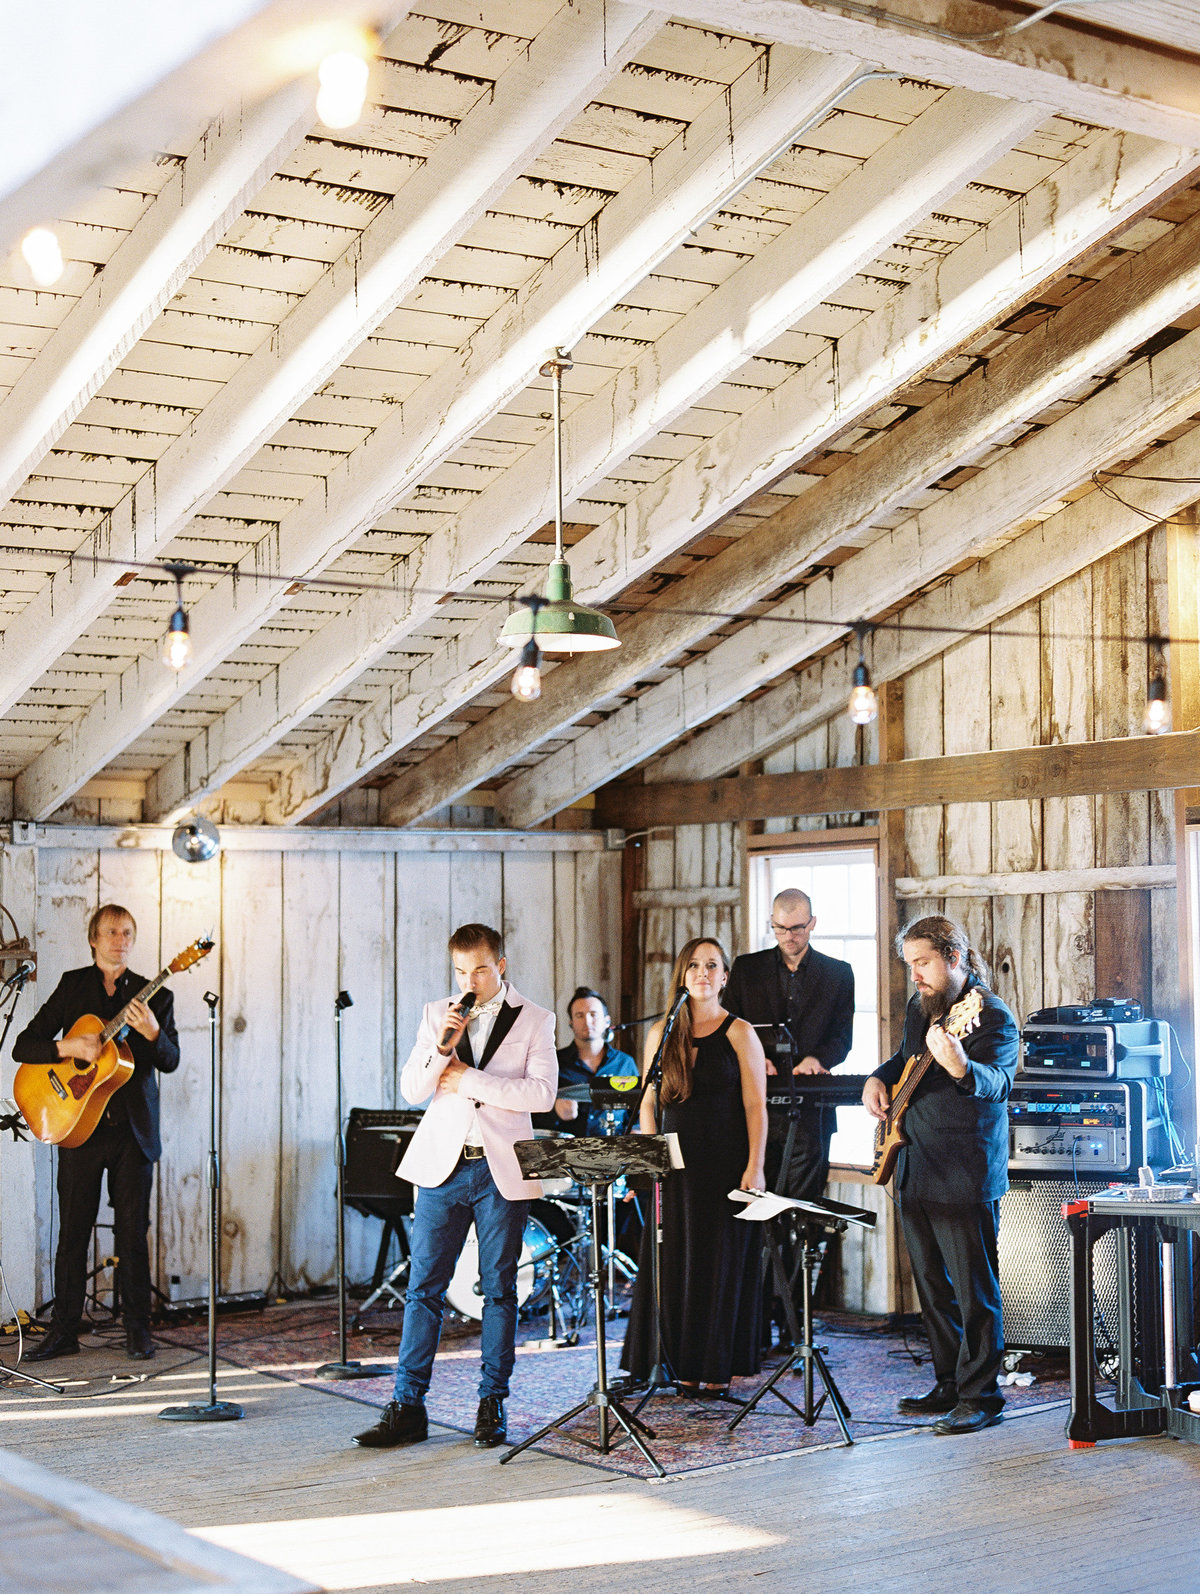 Band in a barn wedding reception © Bonnie Sen Photography